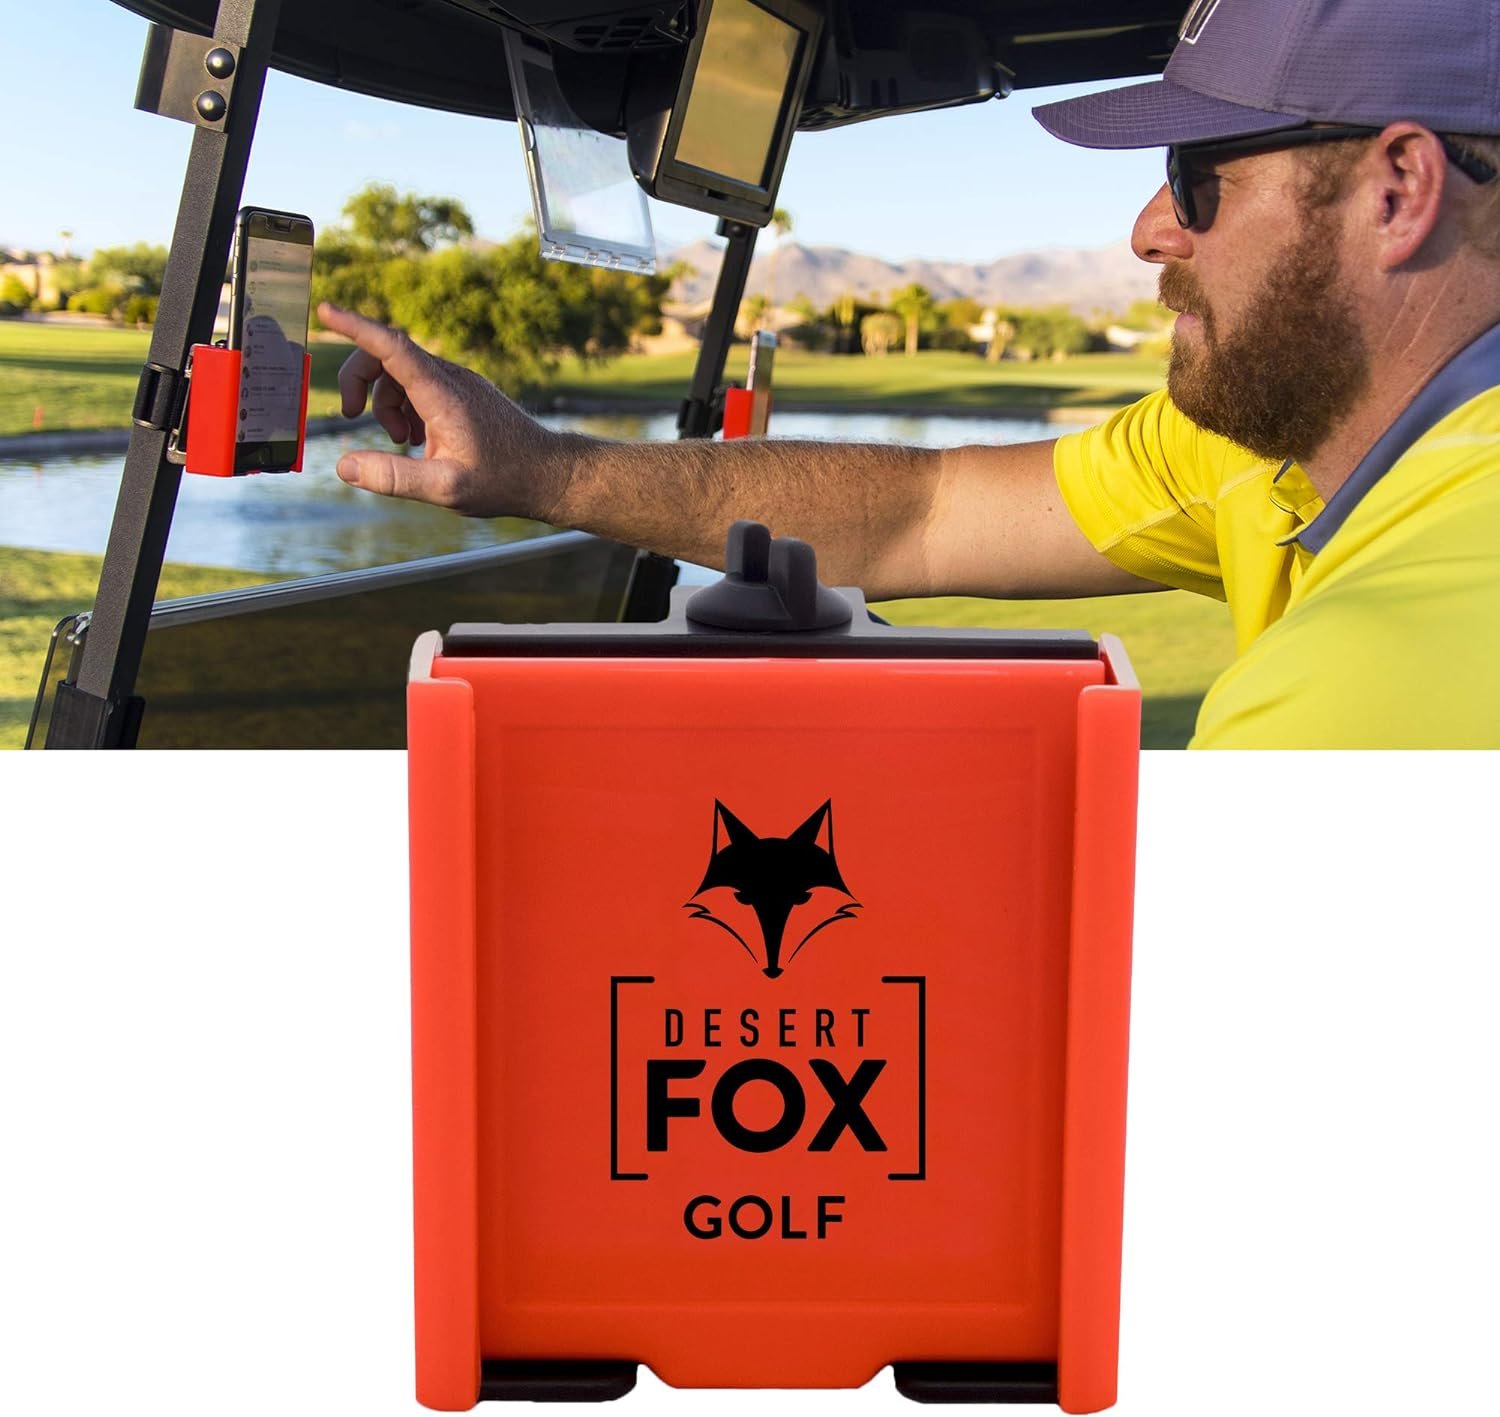 DESERT FOX GOLF - Phone Caddy